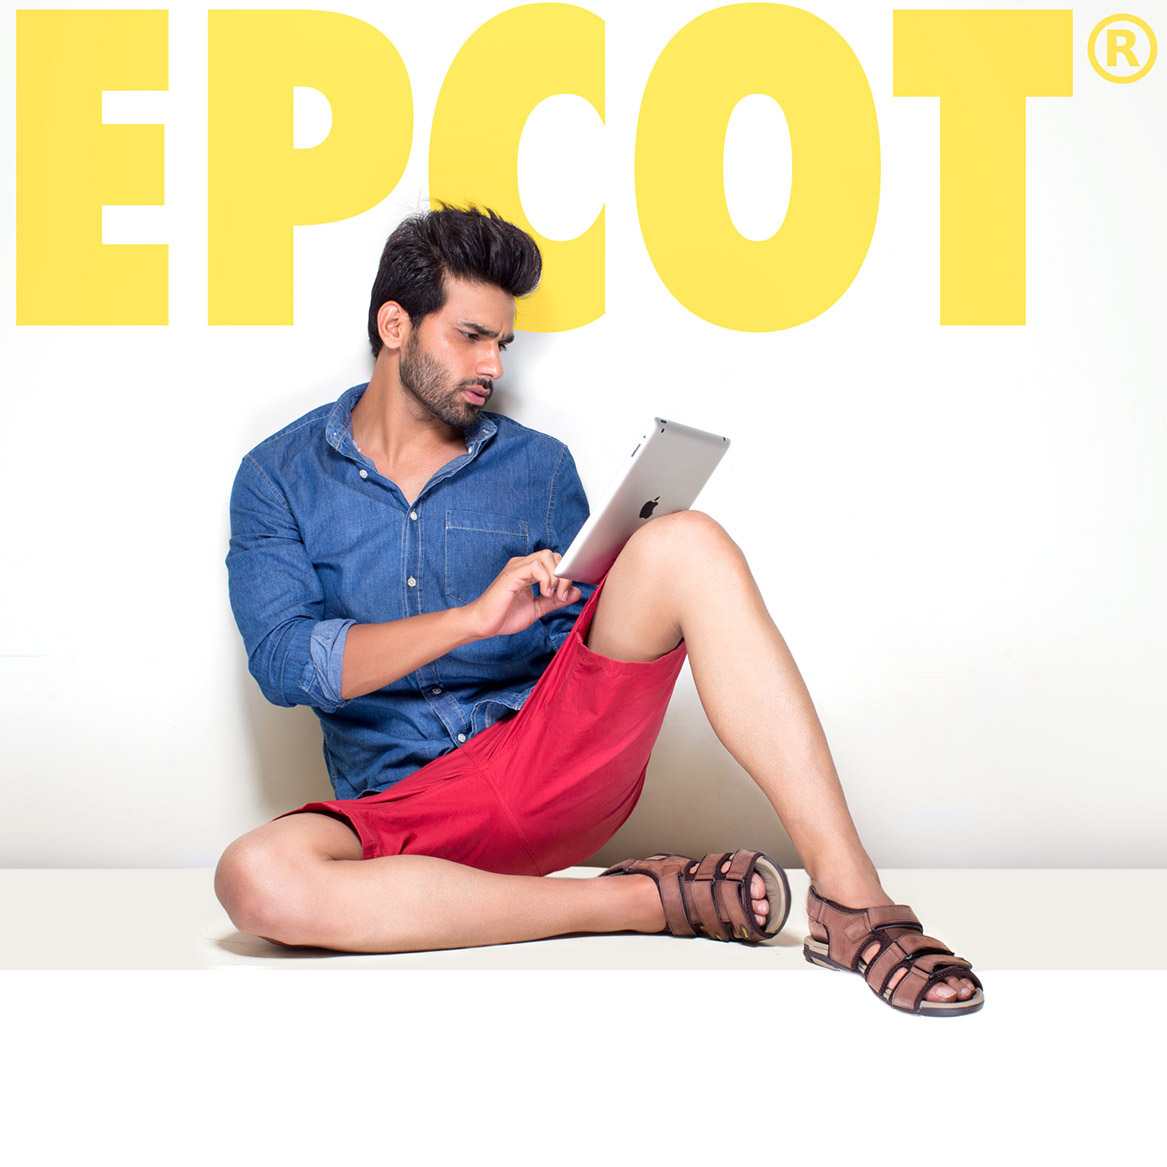 Epcot Shoes